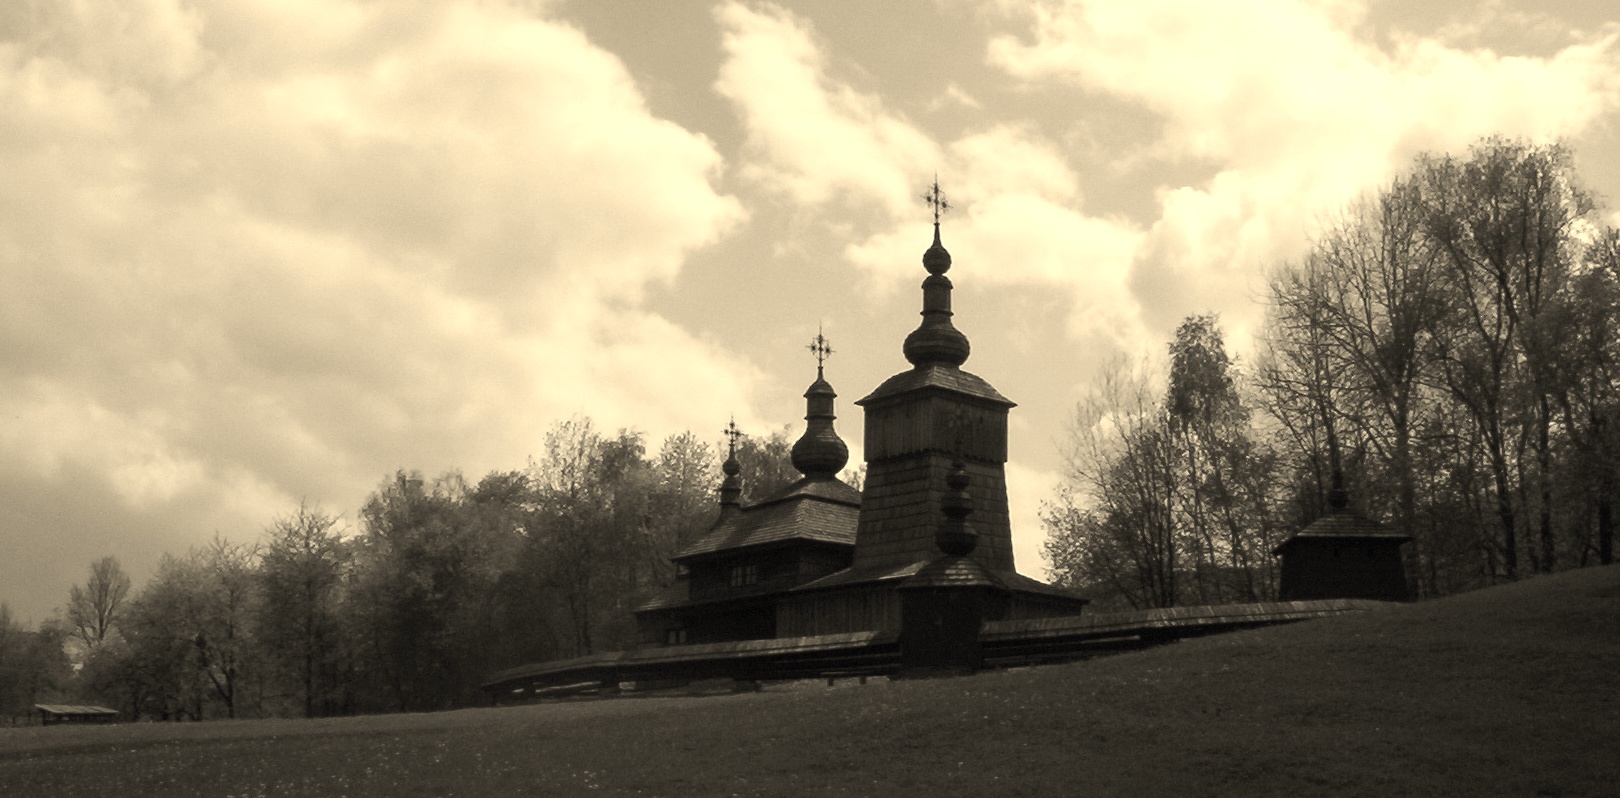 Photograph: Slovak Greek Catholic Church